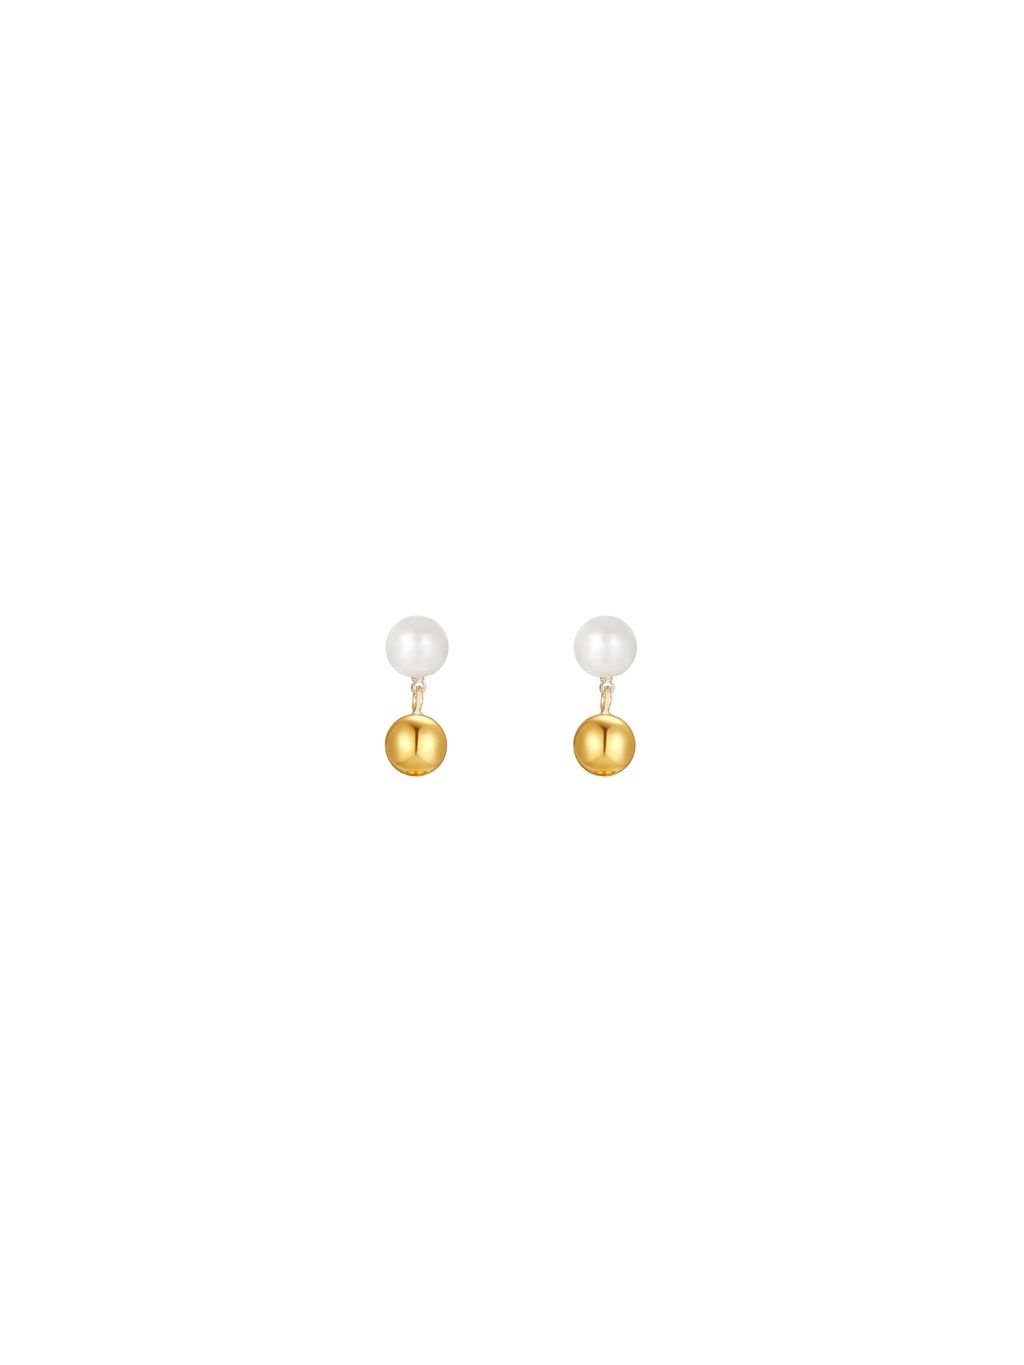 White & Gold Earrings